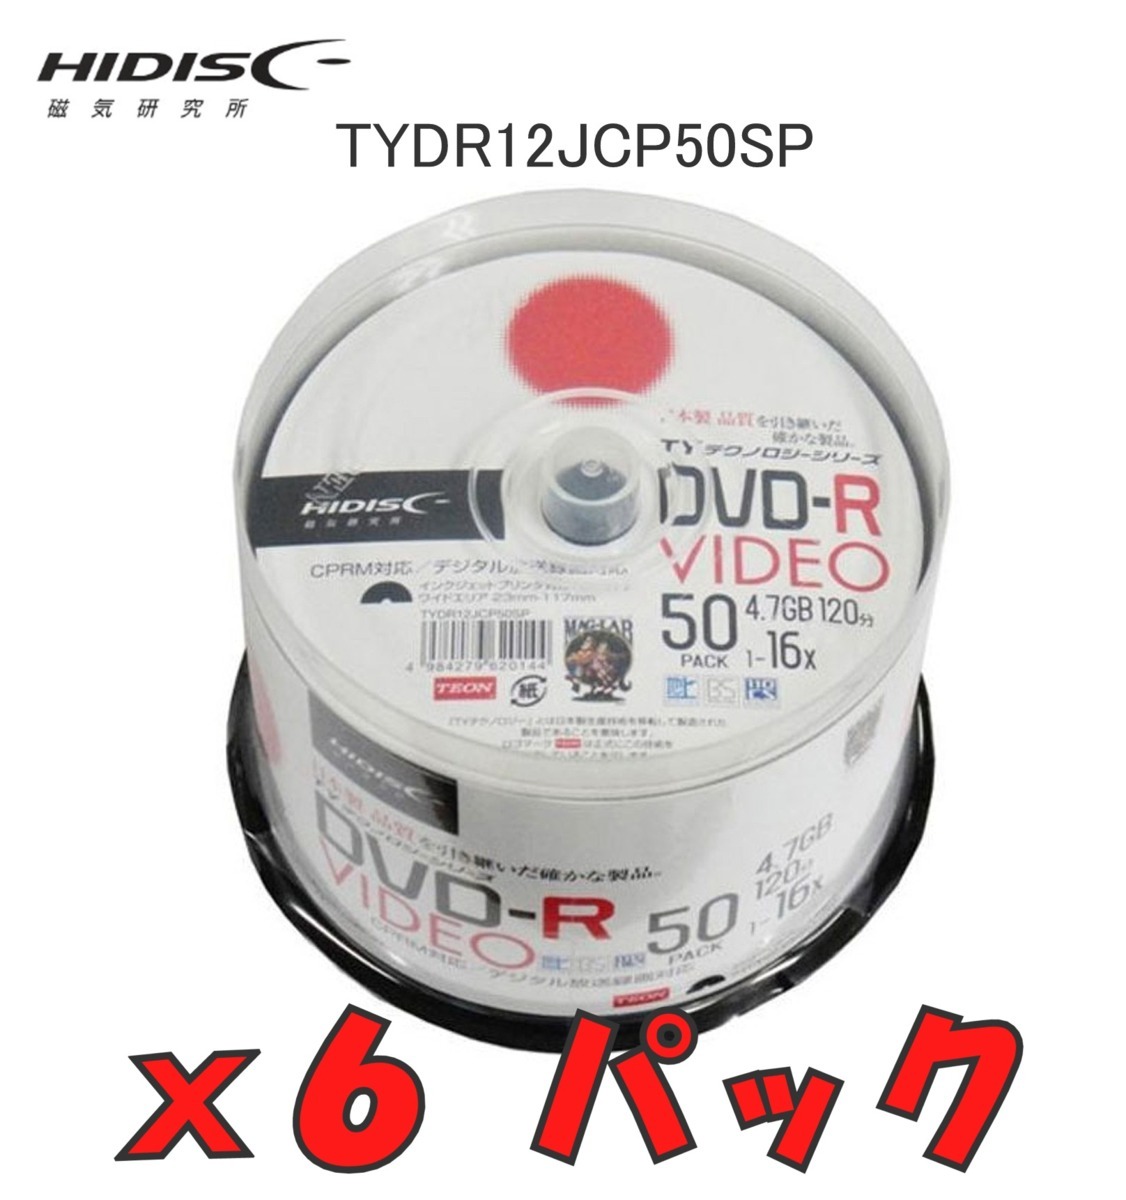 HIDISC ハイディスク DVD-R 録画用 16倍速 120分 スピンドルケース 50枚x6パック TYDR12JCP50SPx6 【TYテクノロジーシリーズ】